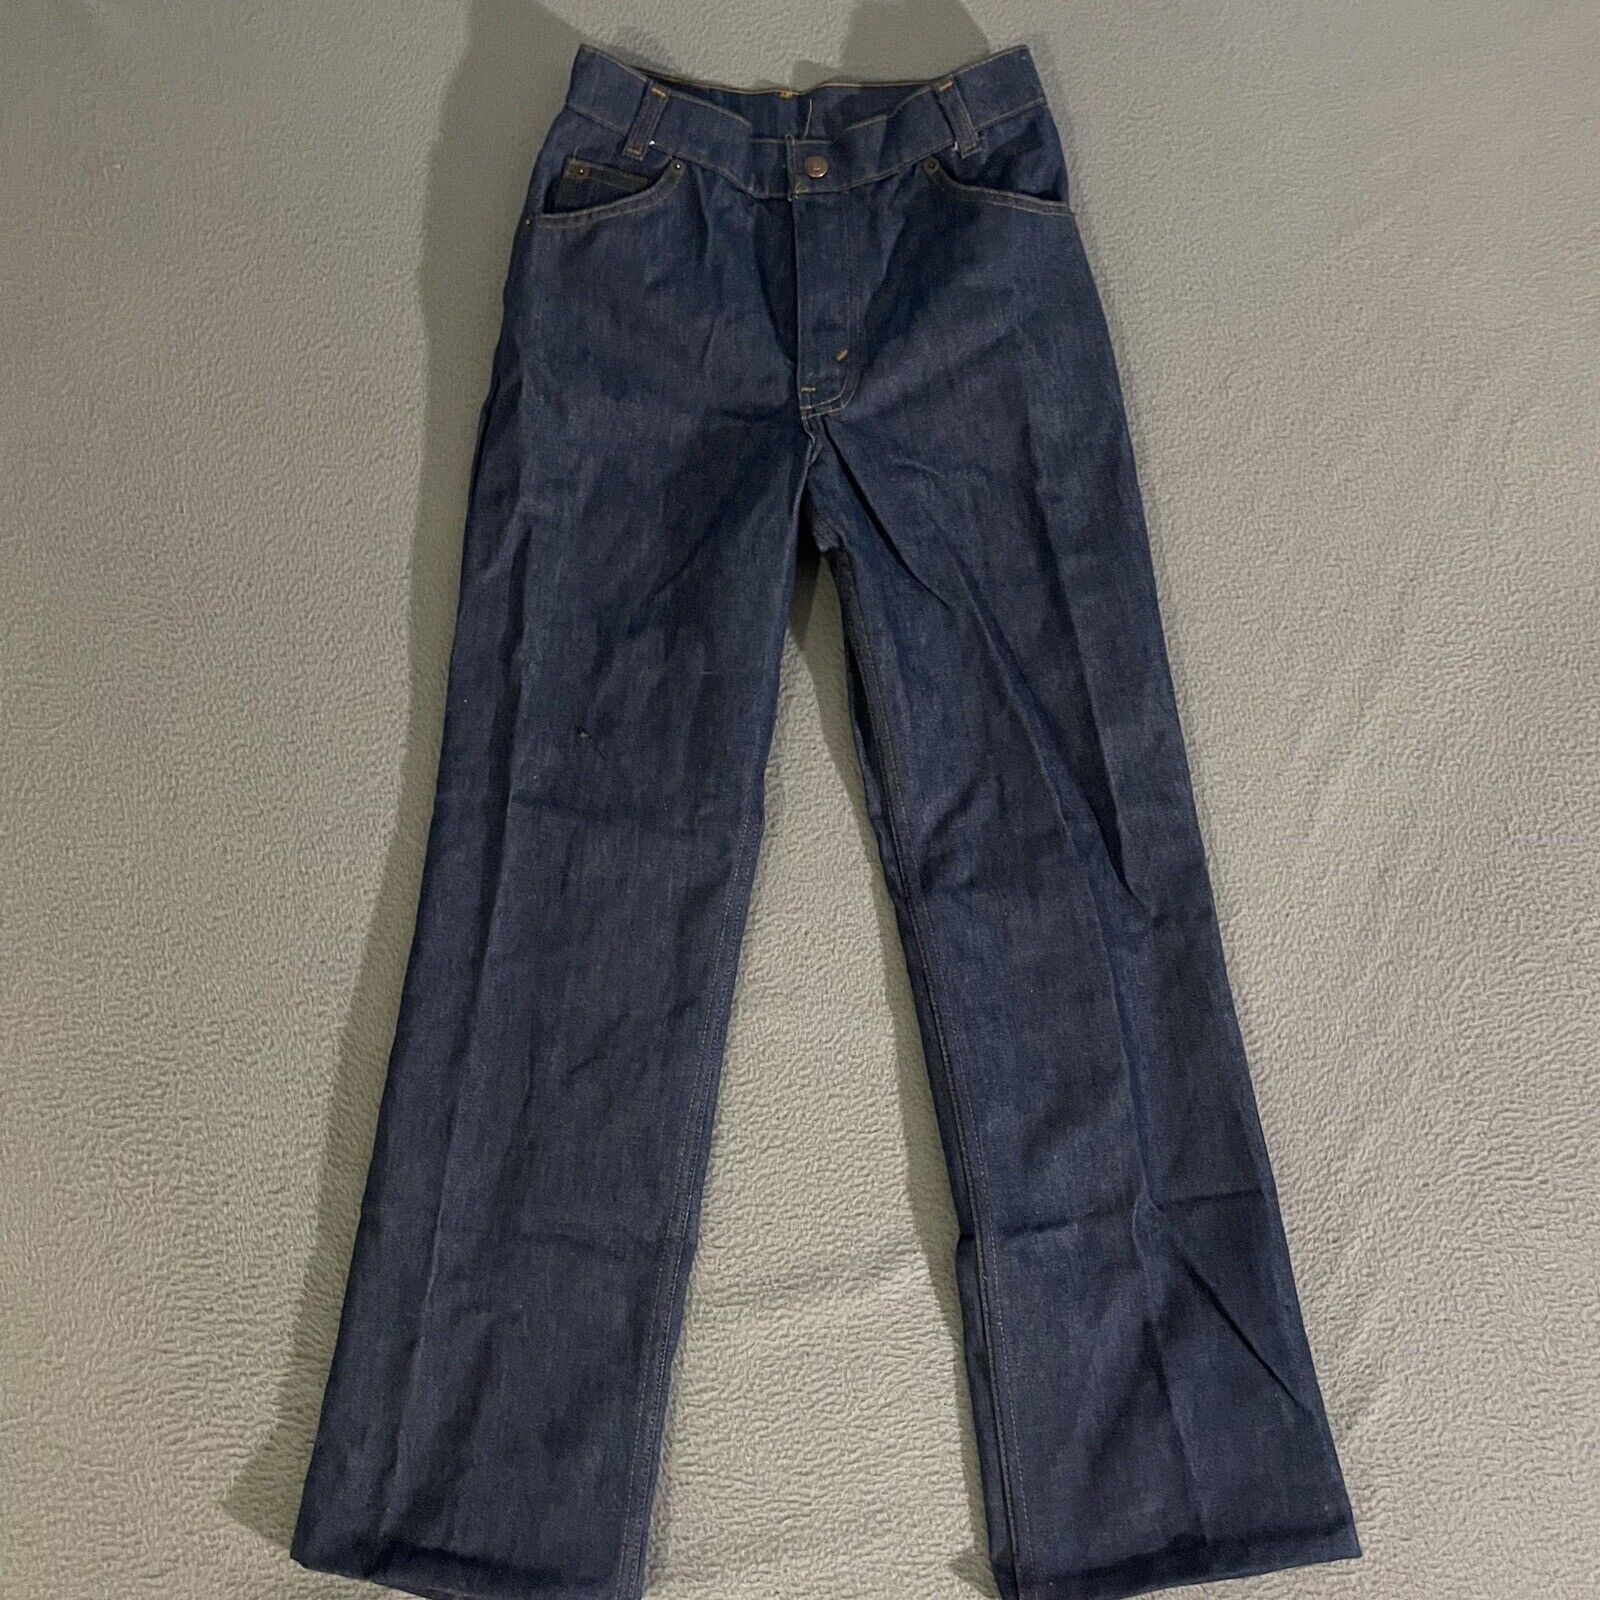 Vintage Levi’s 501 Orange Tab Blue Jeans 26x27 Hemmed Made In USA